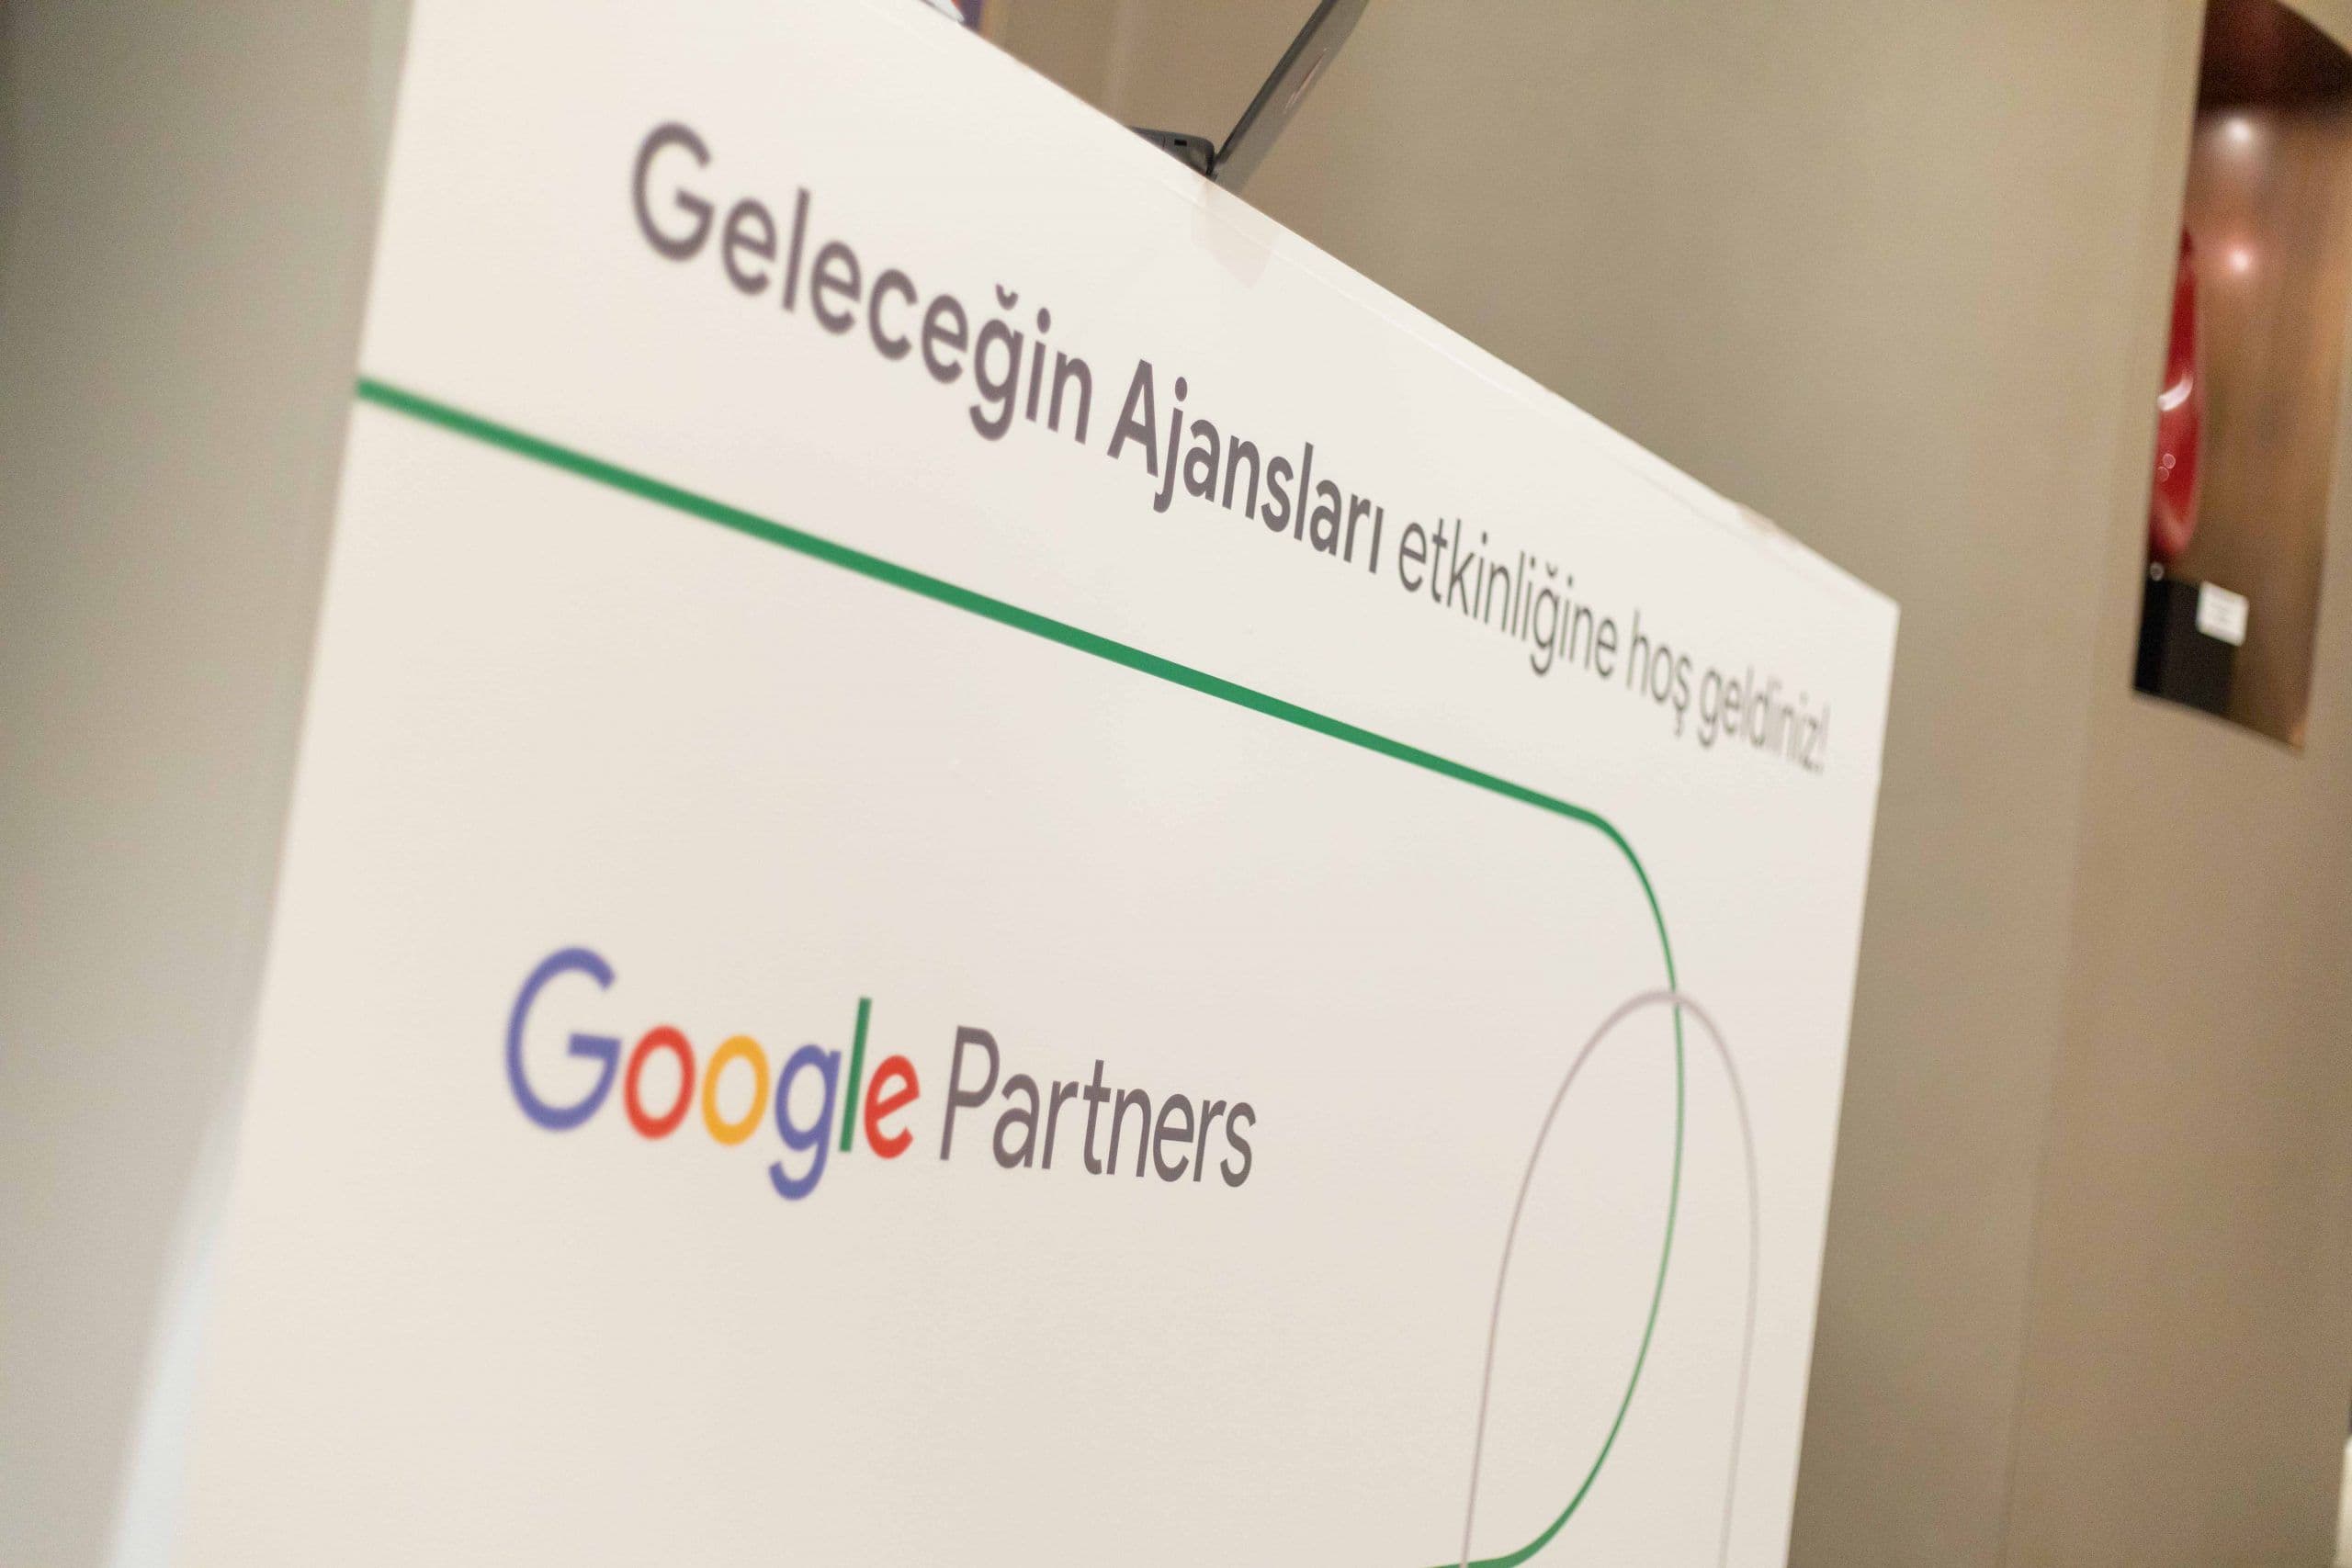 Google Partners Geleceğin Ajansları - 2